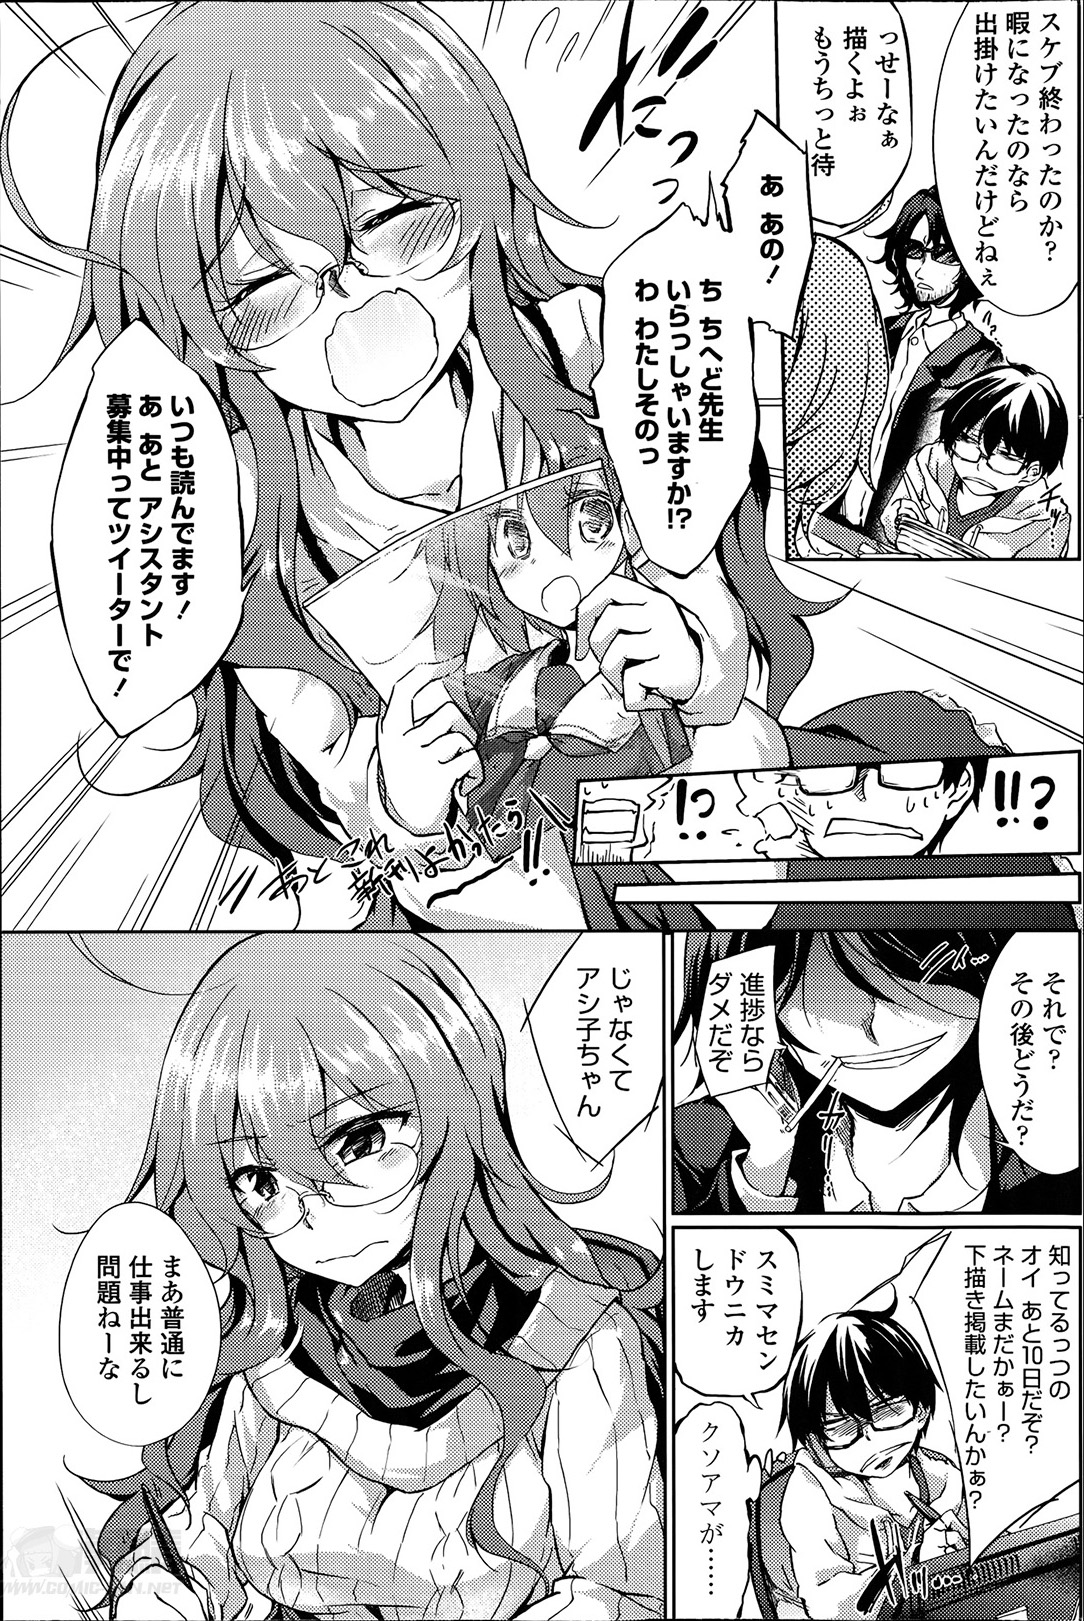 [Amano Chiharu] Yareru! Ero Mangaka Ch.1-2 page 5 full